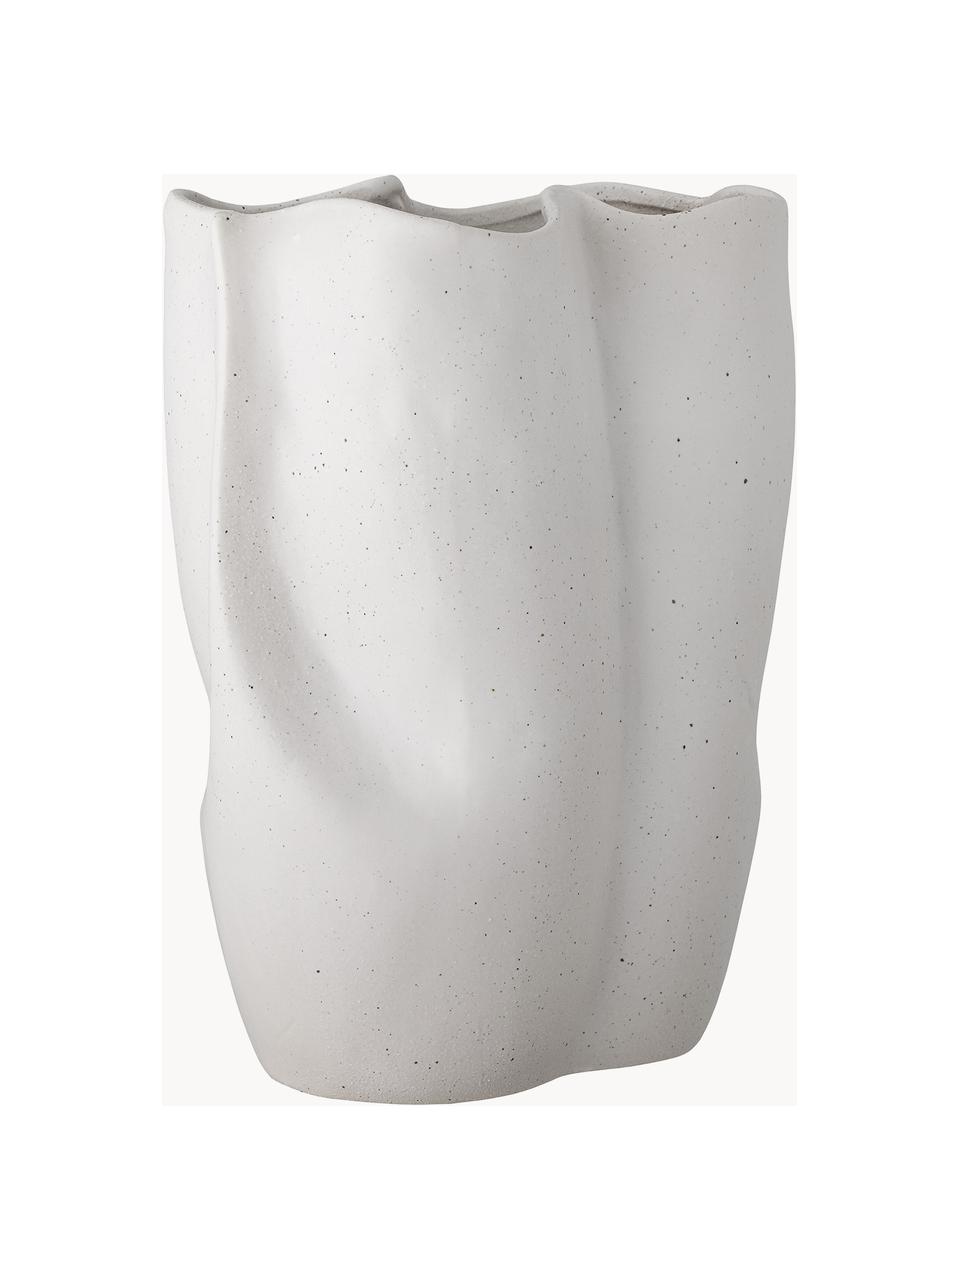 Steingut-Vase Elira in organischer Form, H 35 cm, Steingut, Weiß, B 27 x H 35 cm